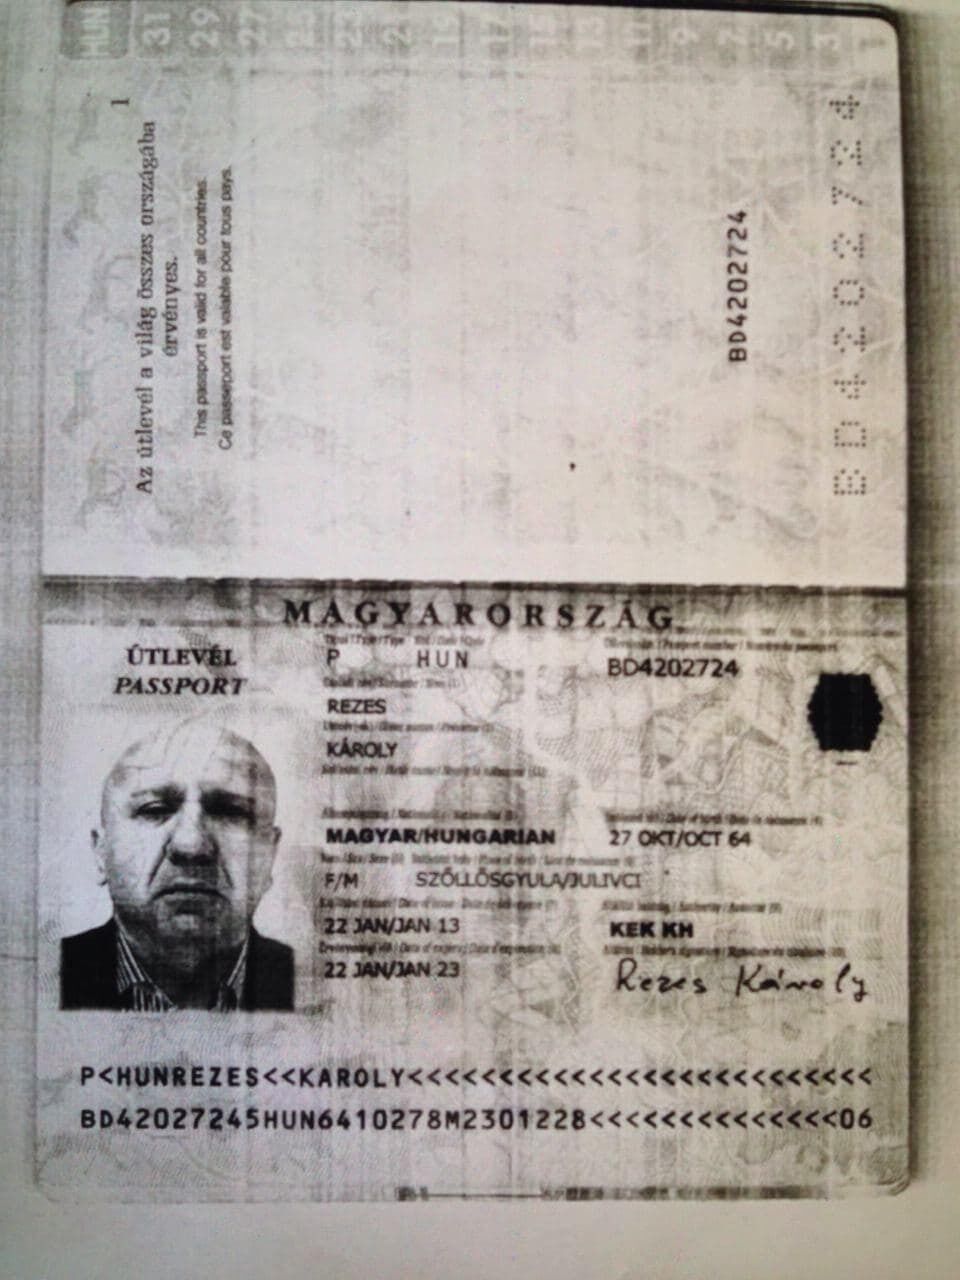 Скан паспорта Карла Резеша